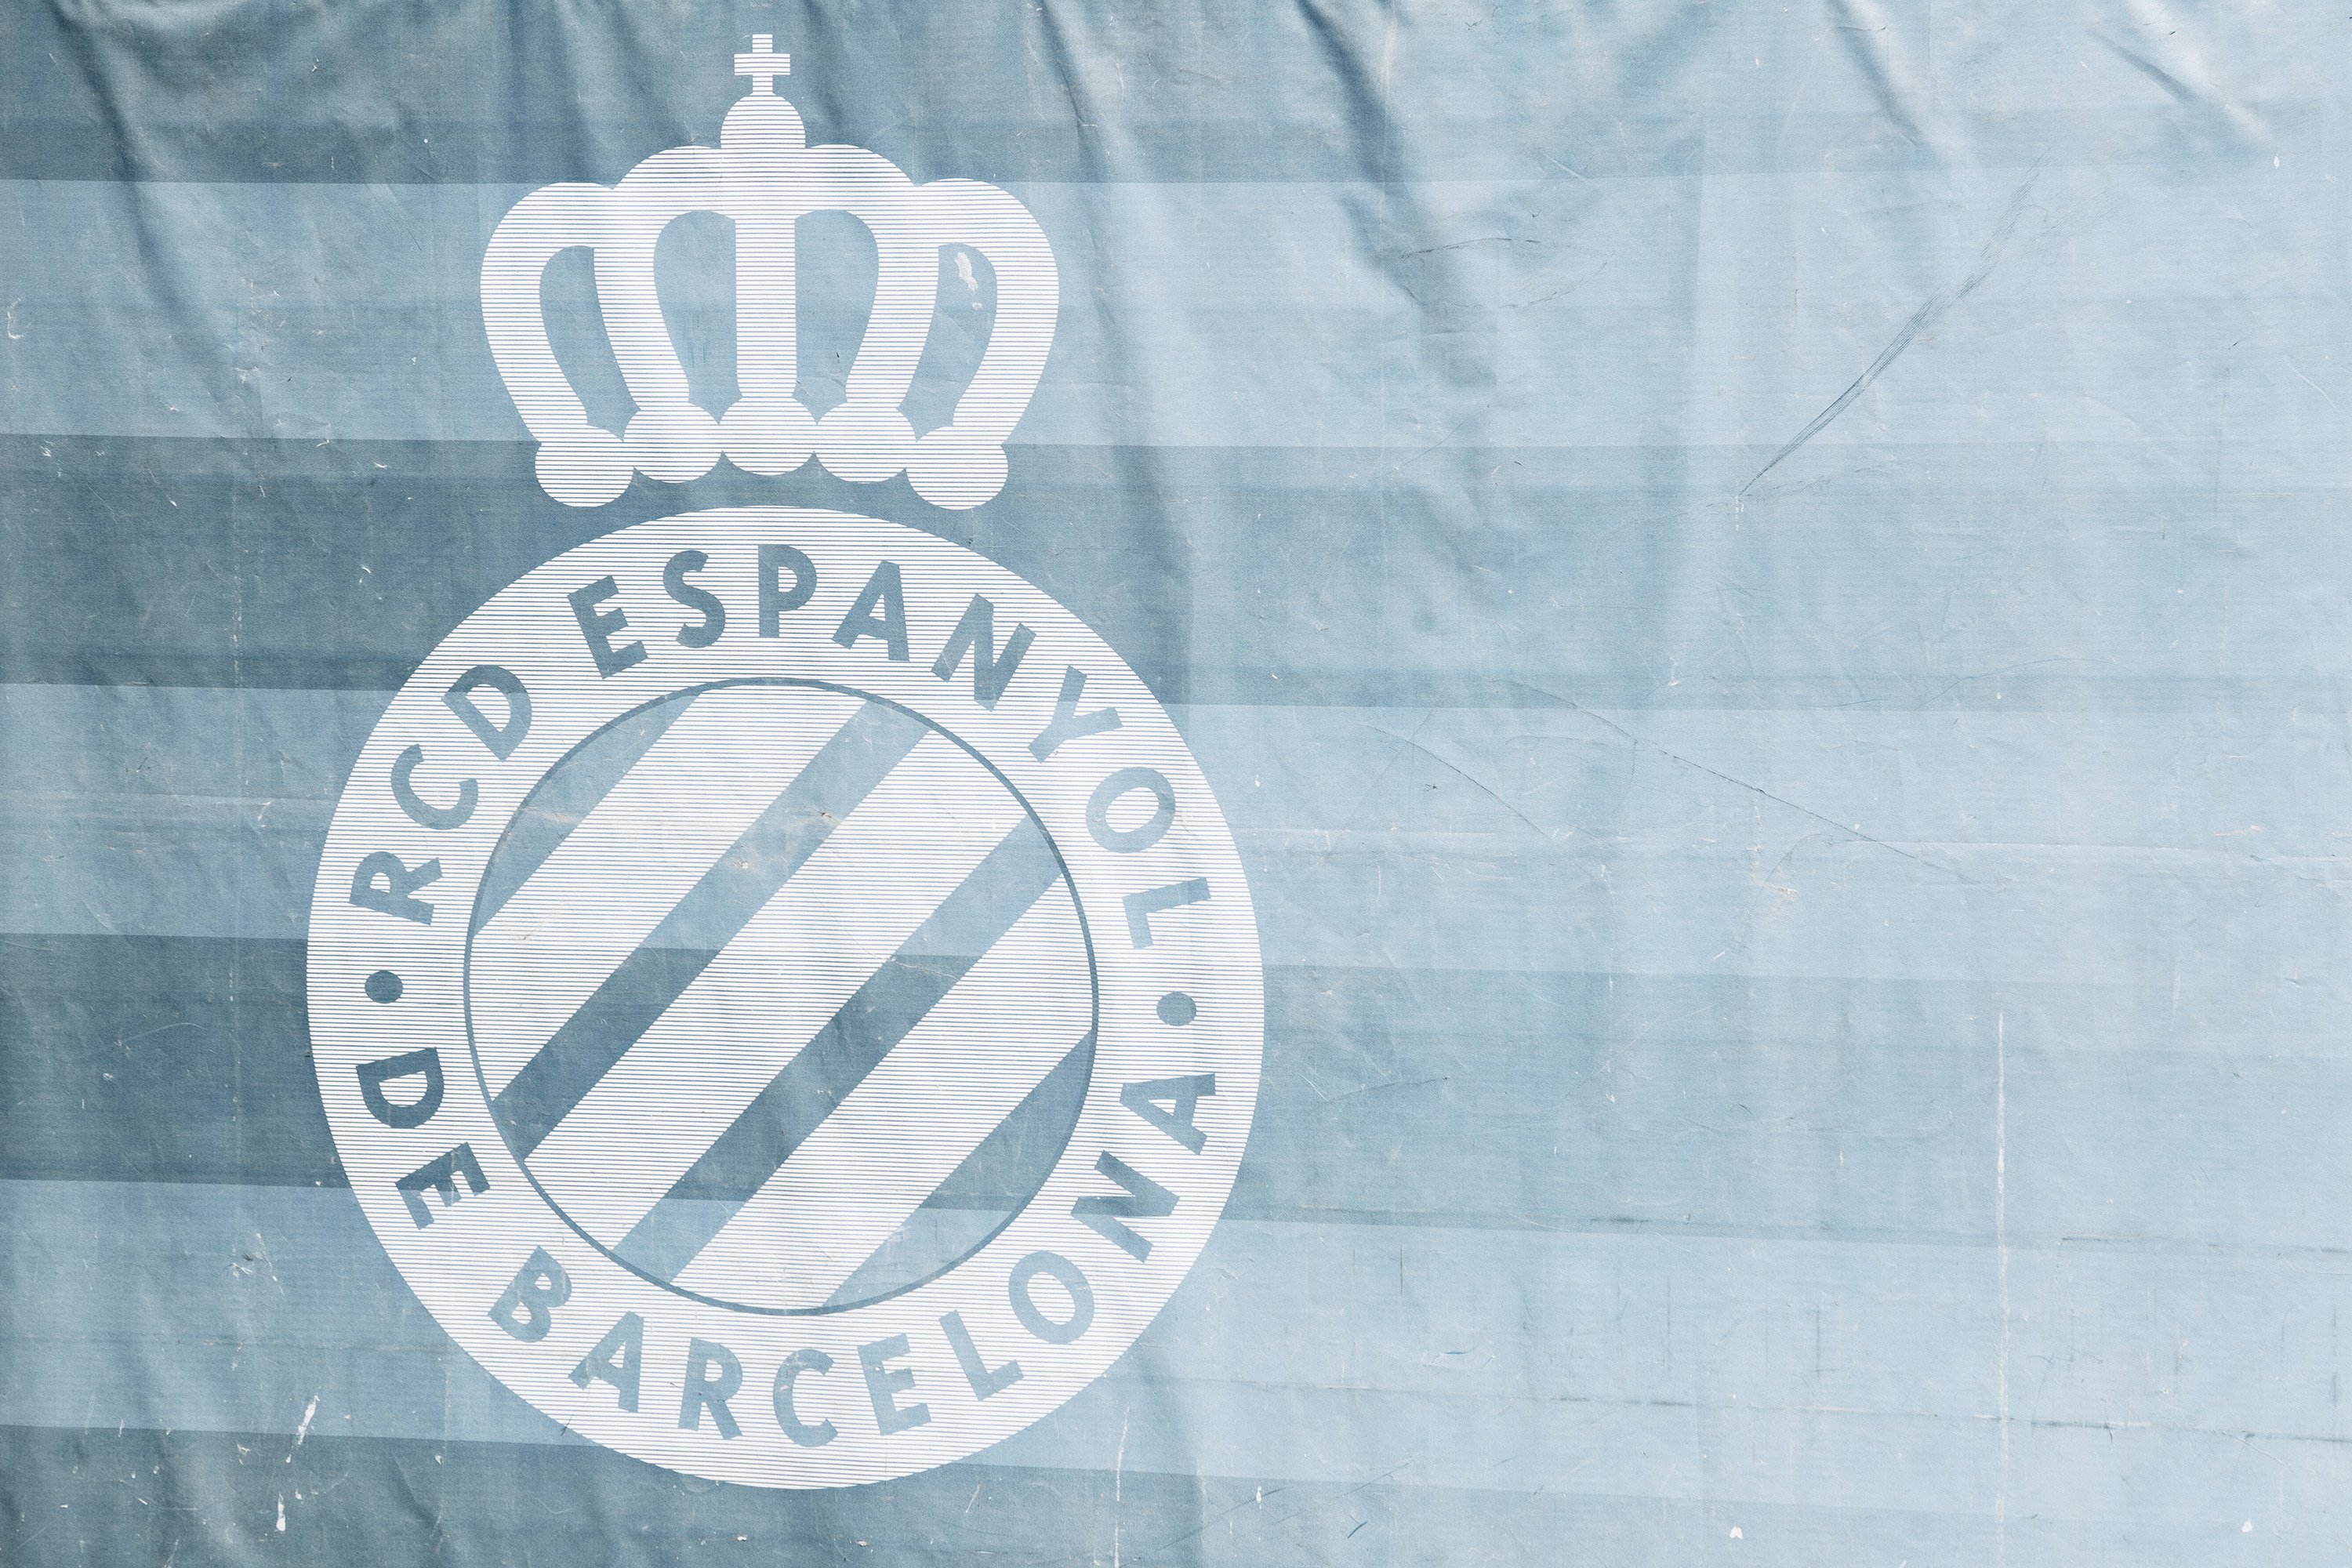 Condena del Espanyol: "La violencia y el racismo no tienen cabida en el fútbol"